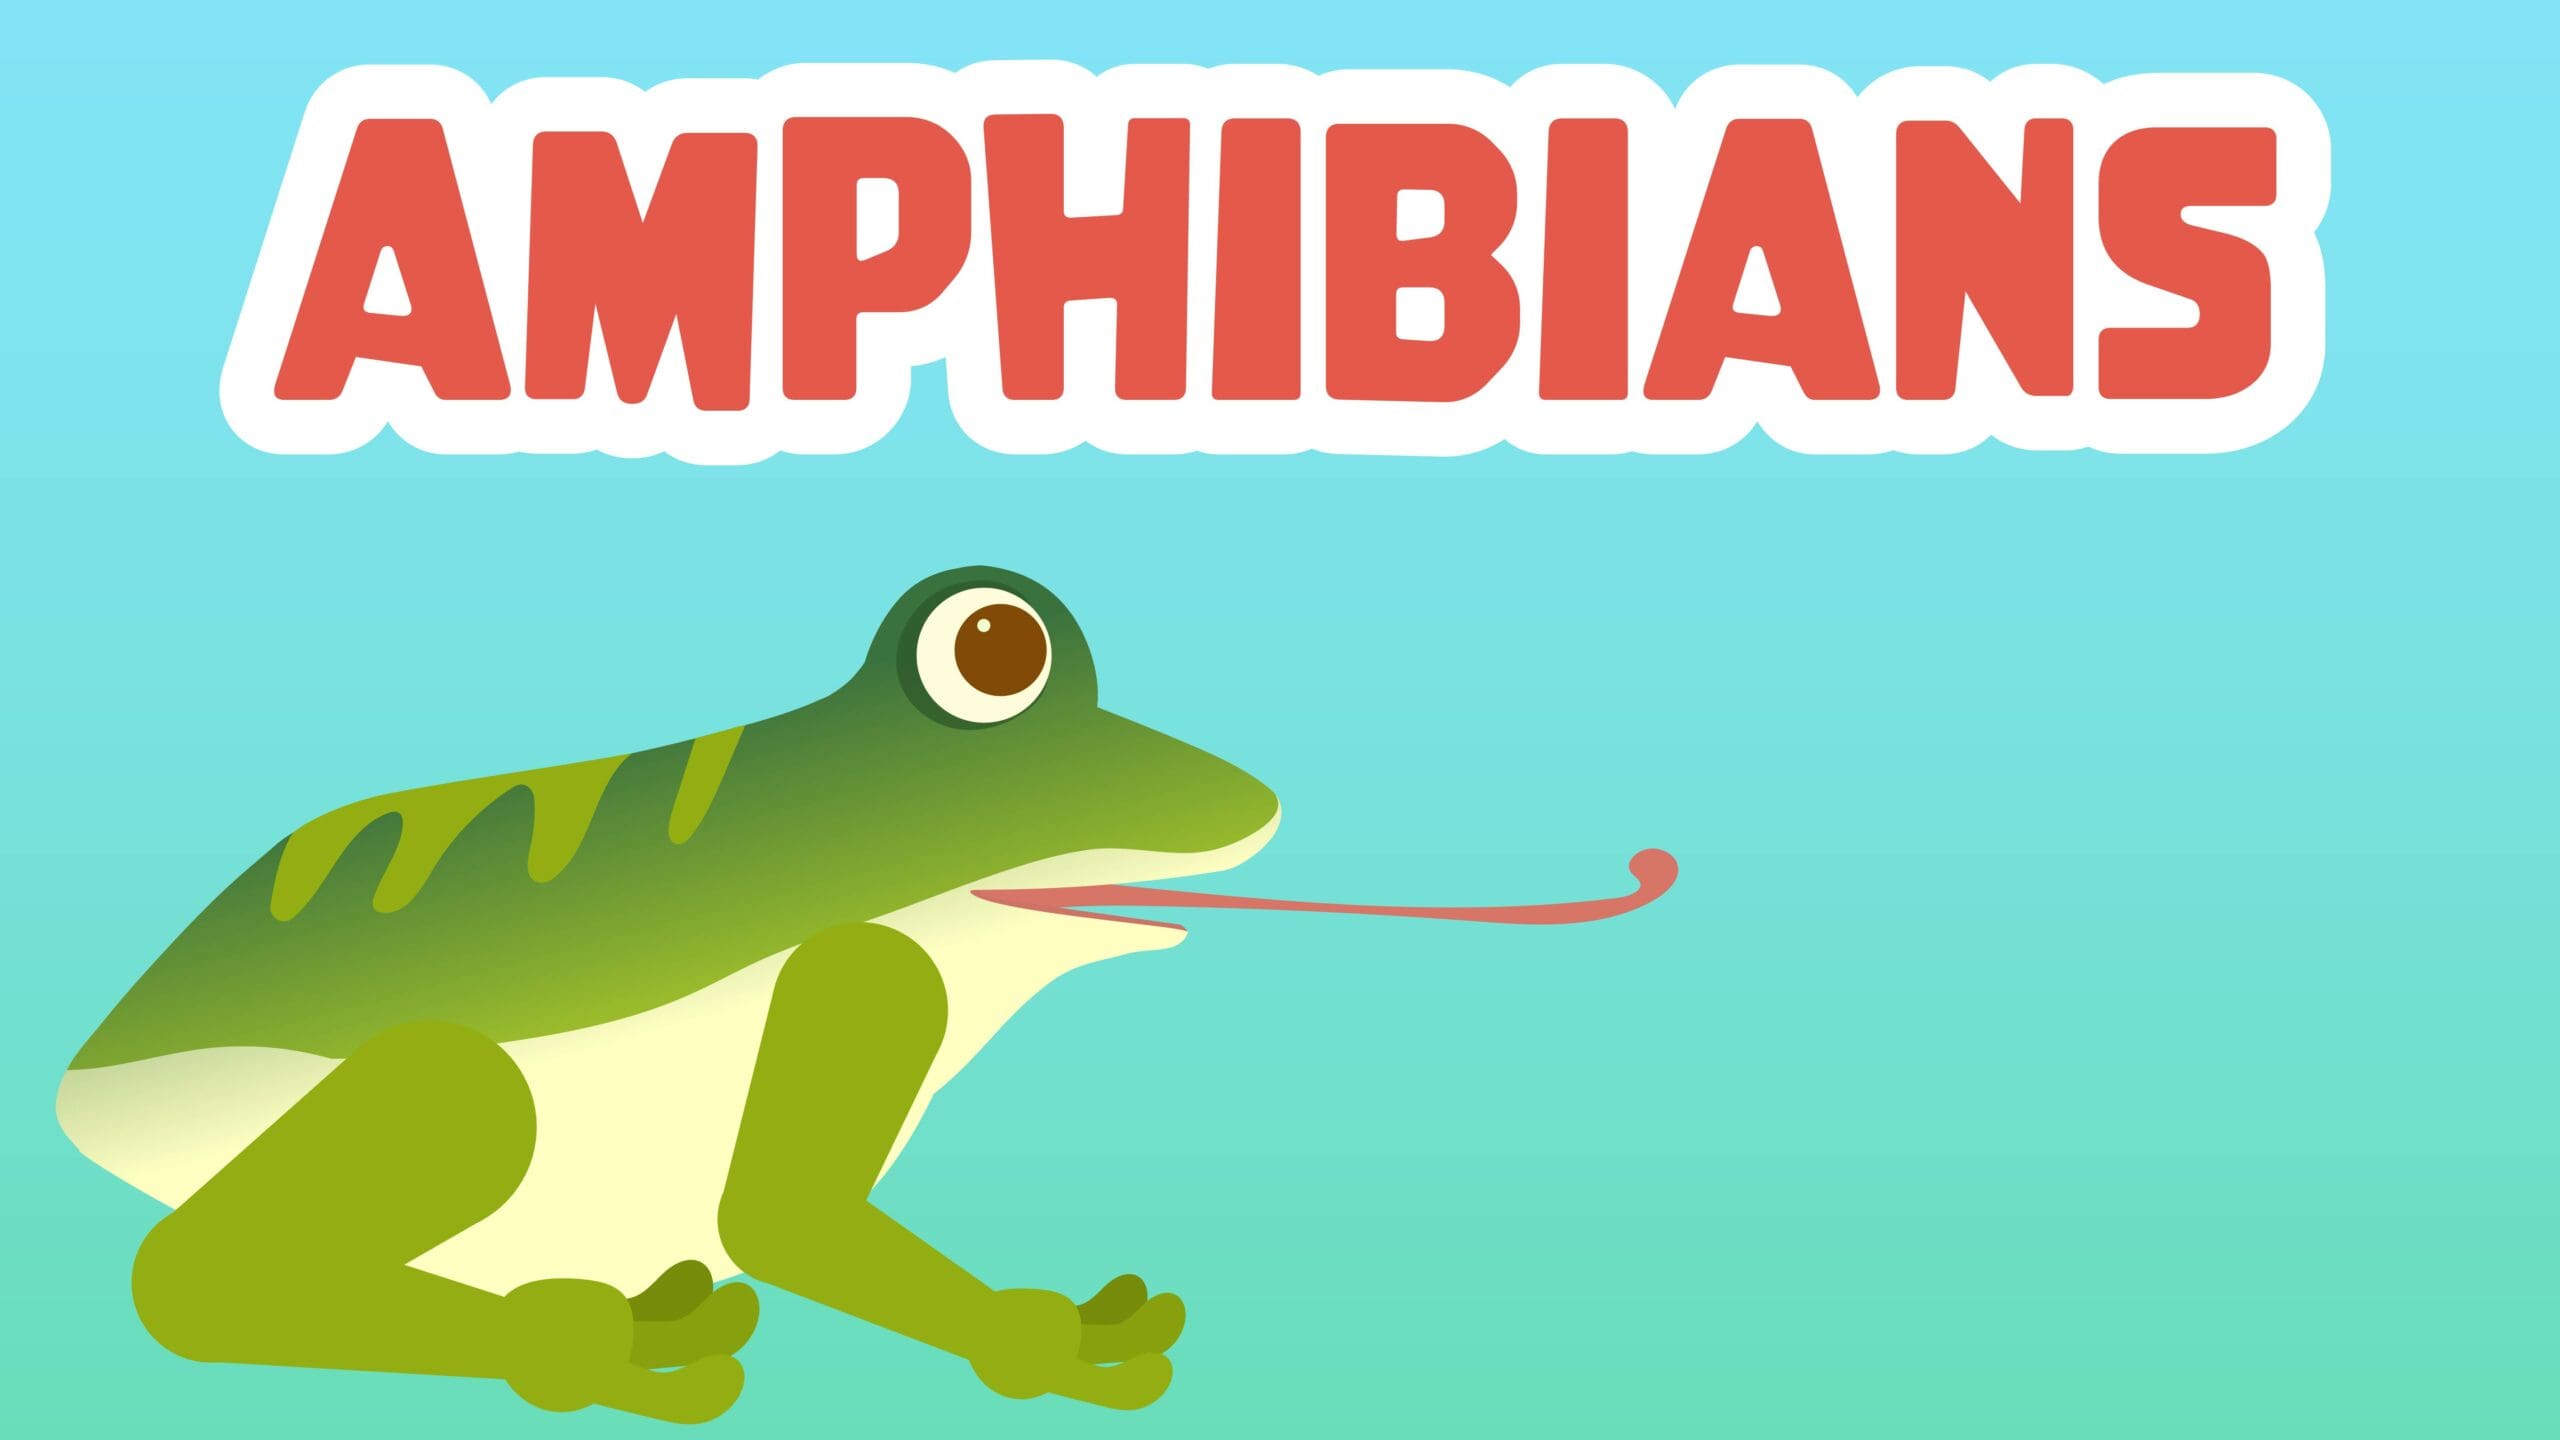 Amphibians Facts for Kids – 5 Amazing Facts about Amphibians